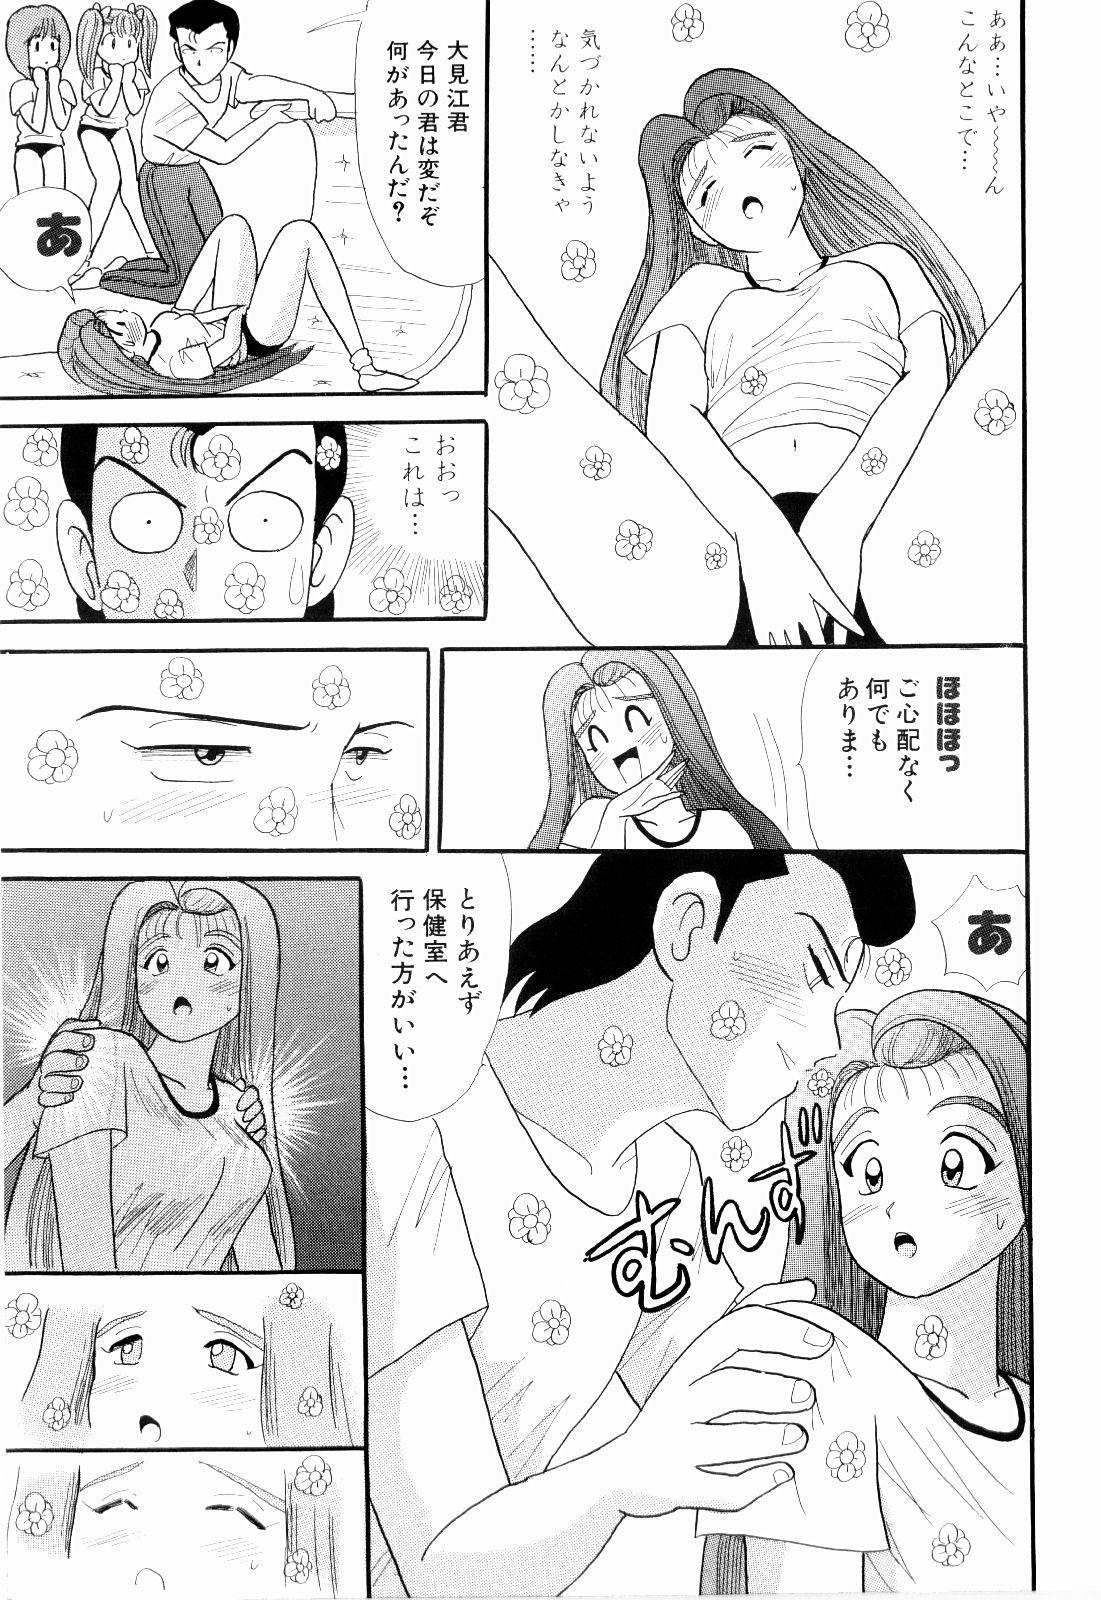 Pelada Kenjiro Kakimoto - Futari Kurashi 07 Cdmx - Page 11